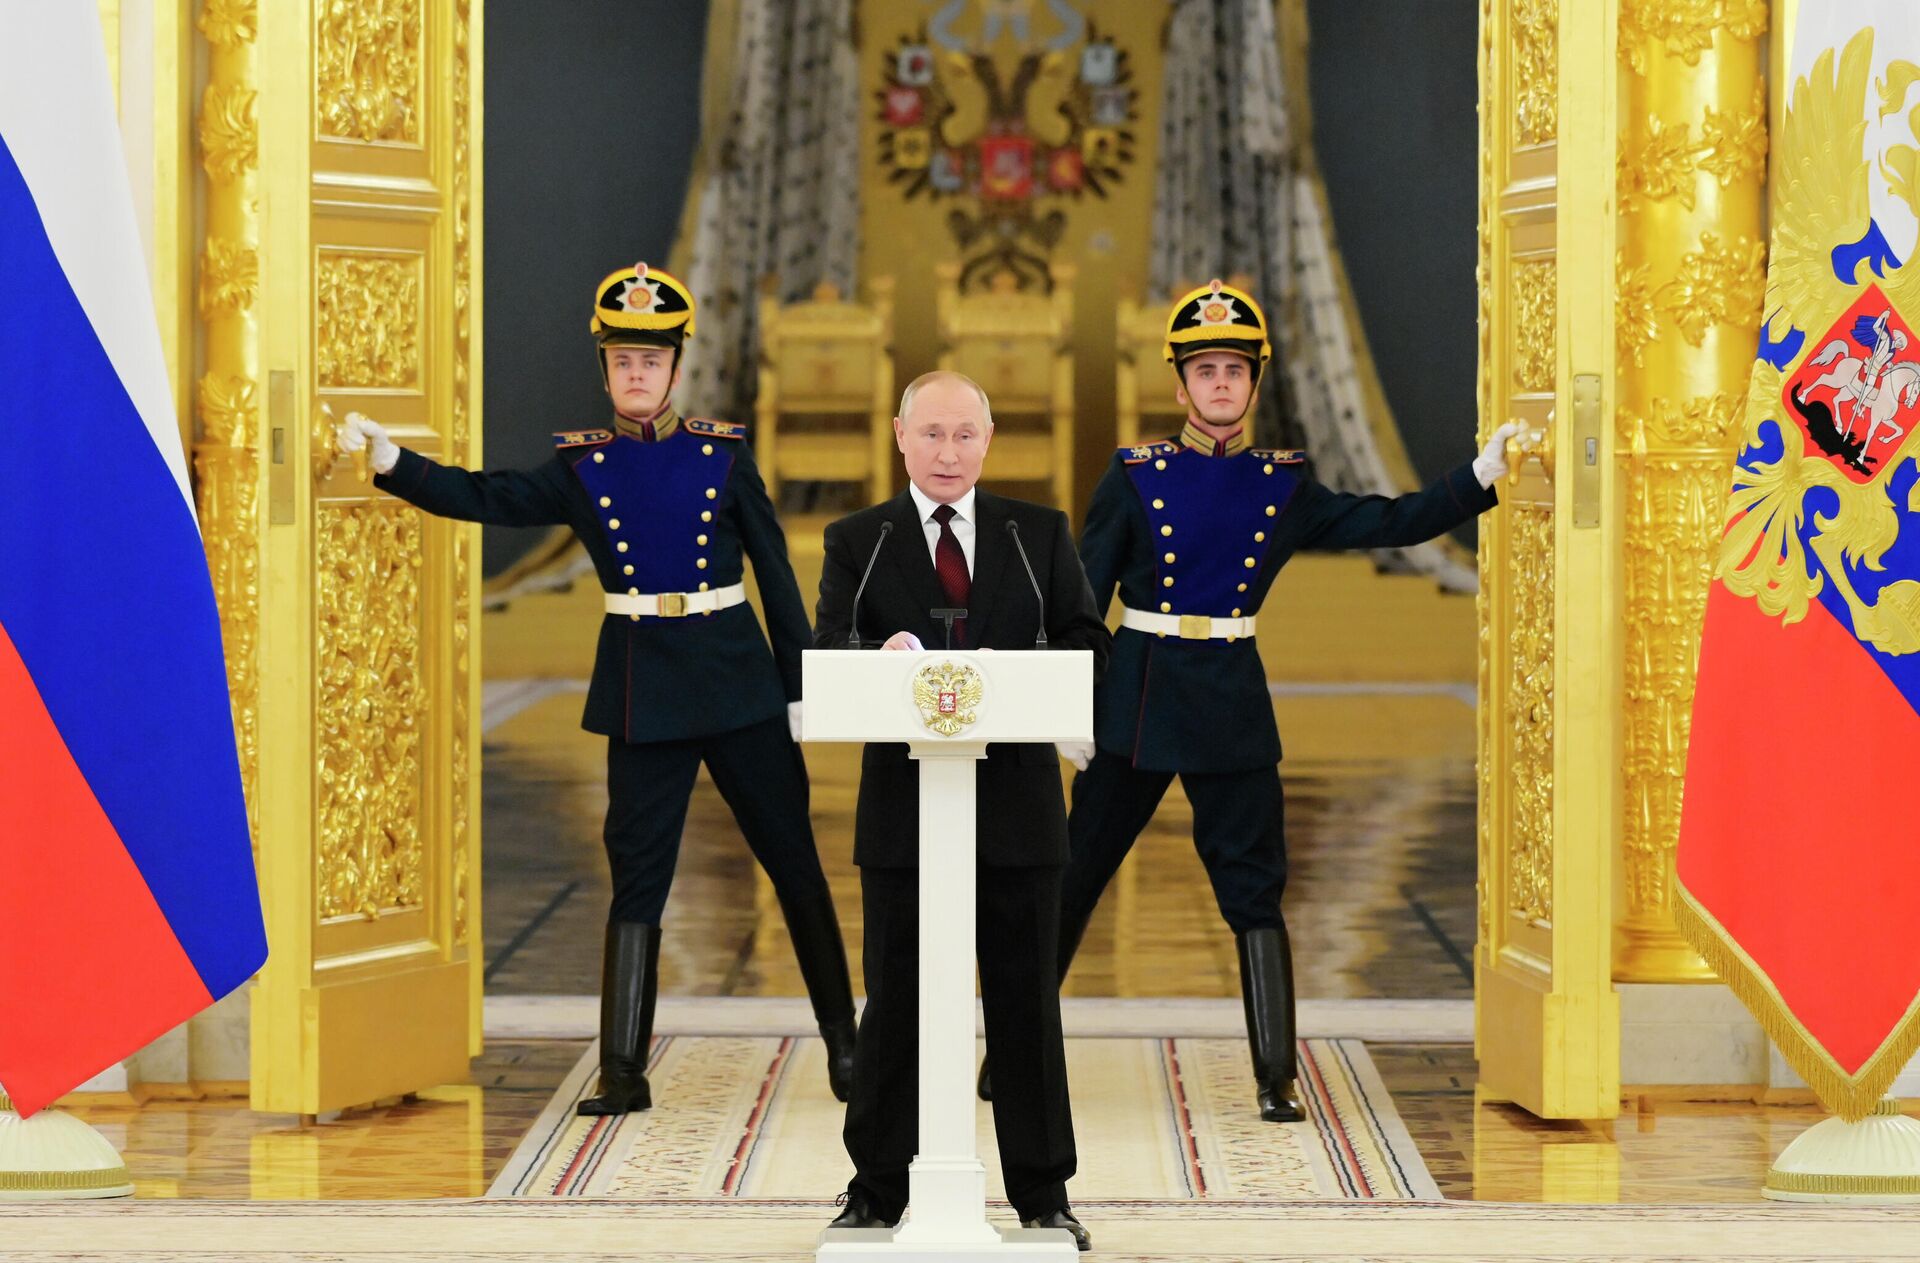 O presidente russo, Vladimir Putin, fala durante cerimônia para receber as credenciais de embaixadores estrangeiros no Kremlin, em Moscou, Rússia, 1º de dezembro de 2021 - Sputnik Brasil, 1920, 01.12.2021